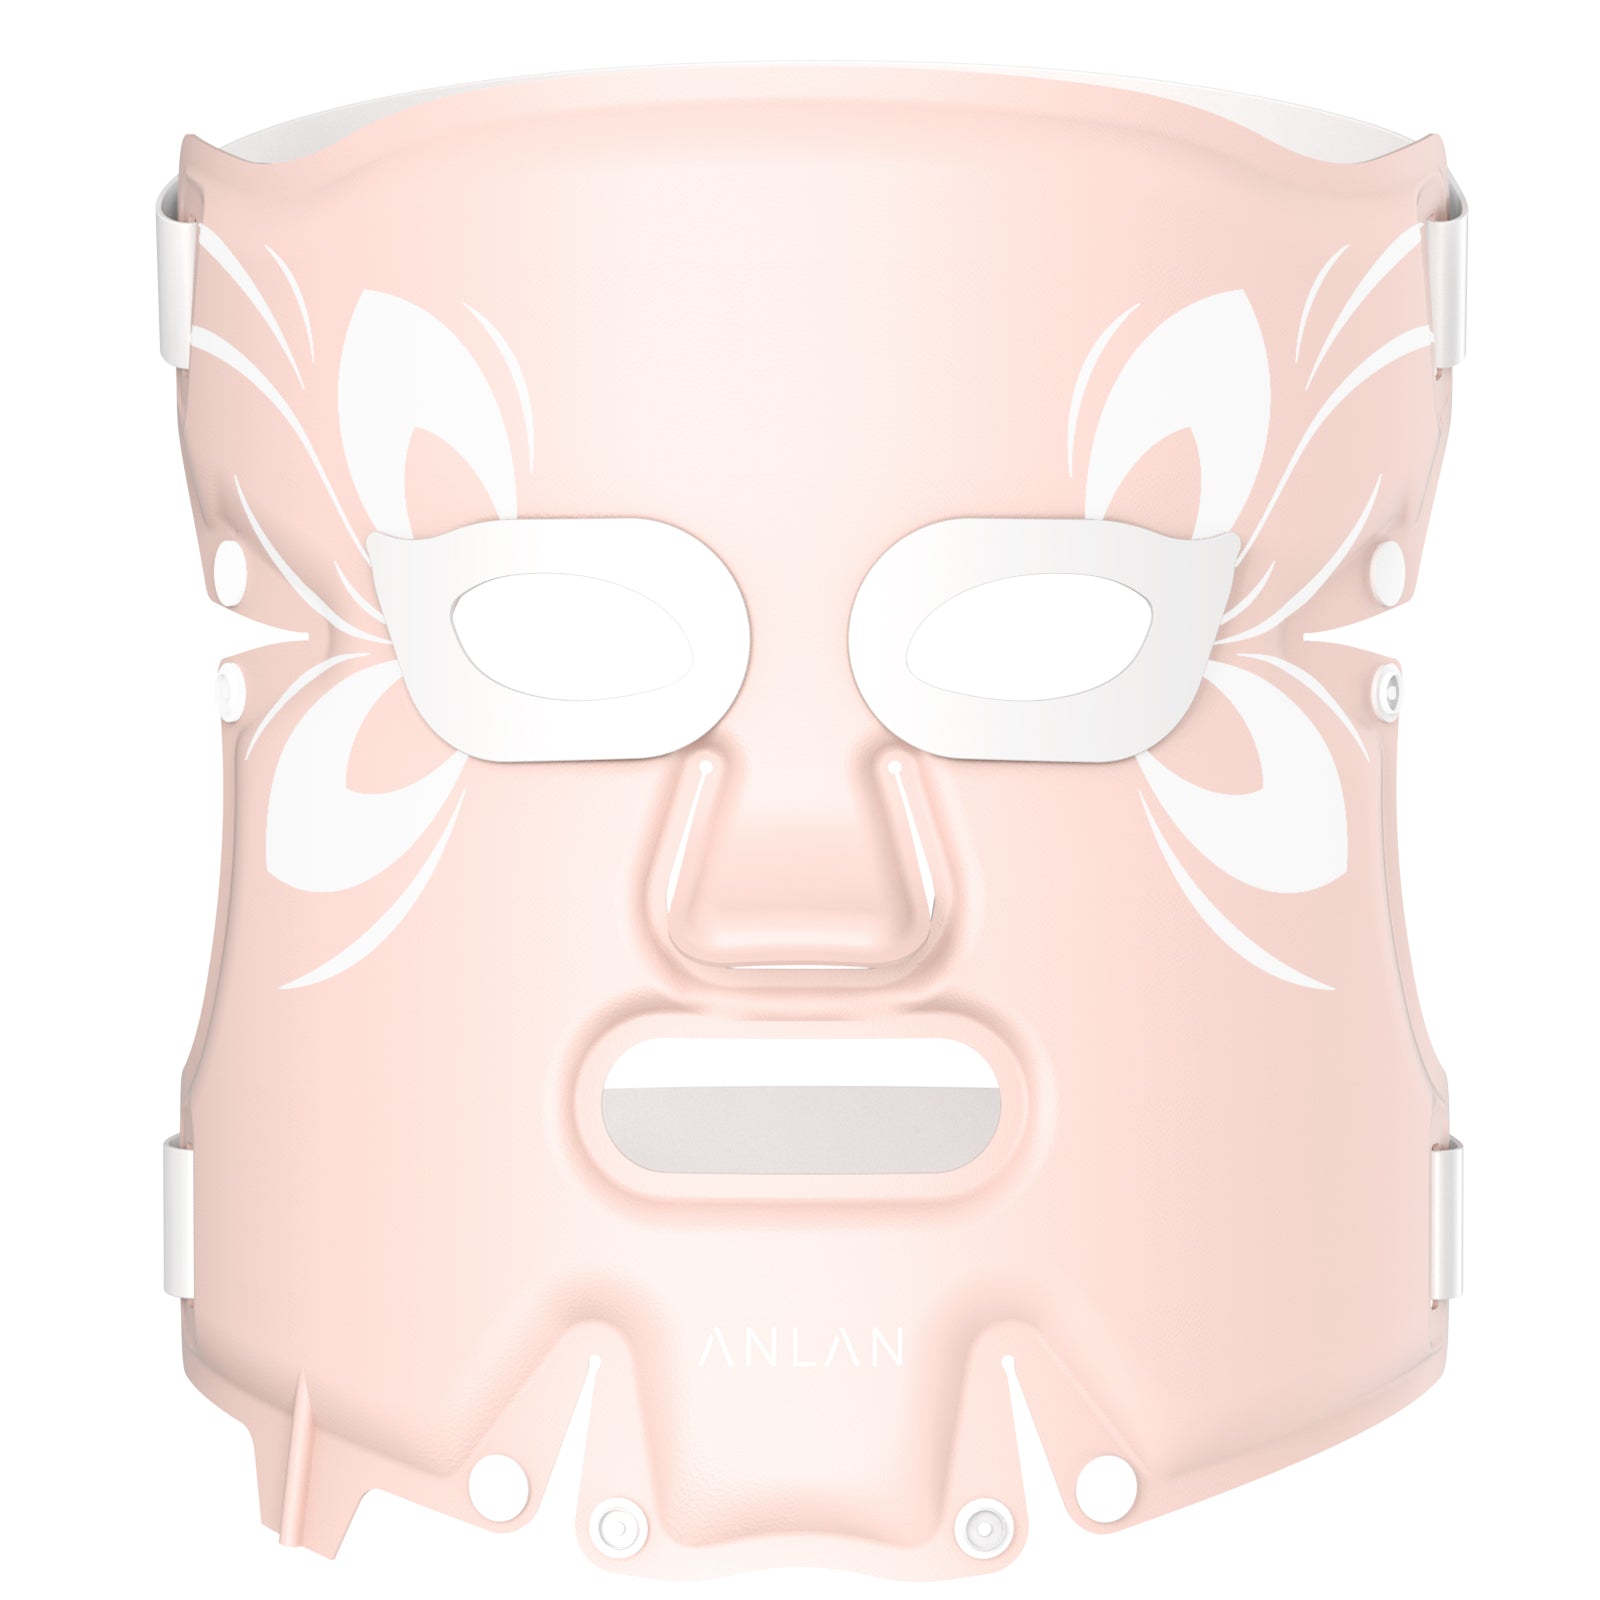 ANLAN LED 美顔マスク 美顔器 3色光エステ 美肌 ニキビ対策 毛穴